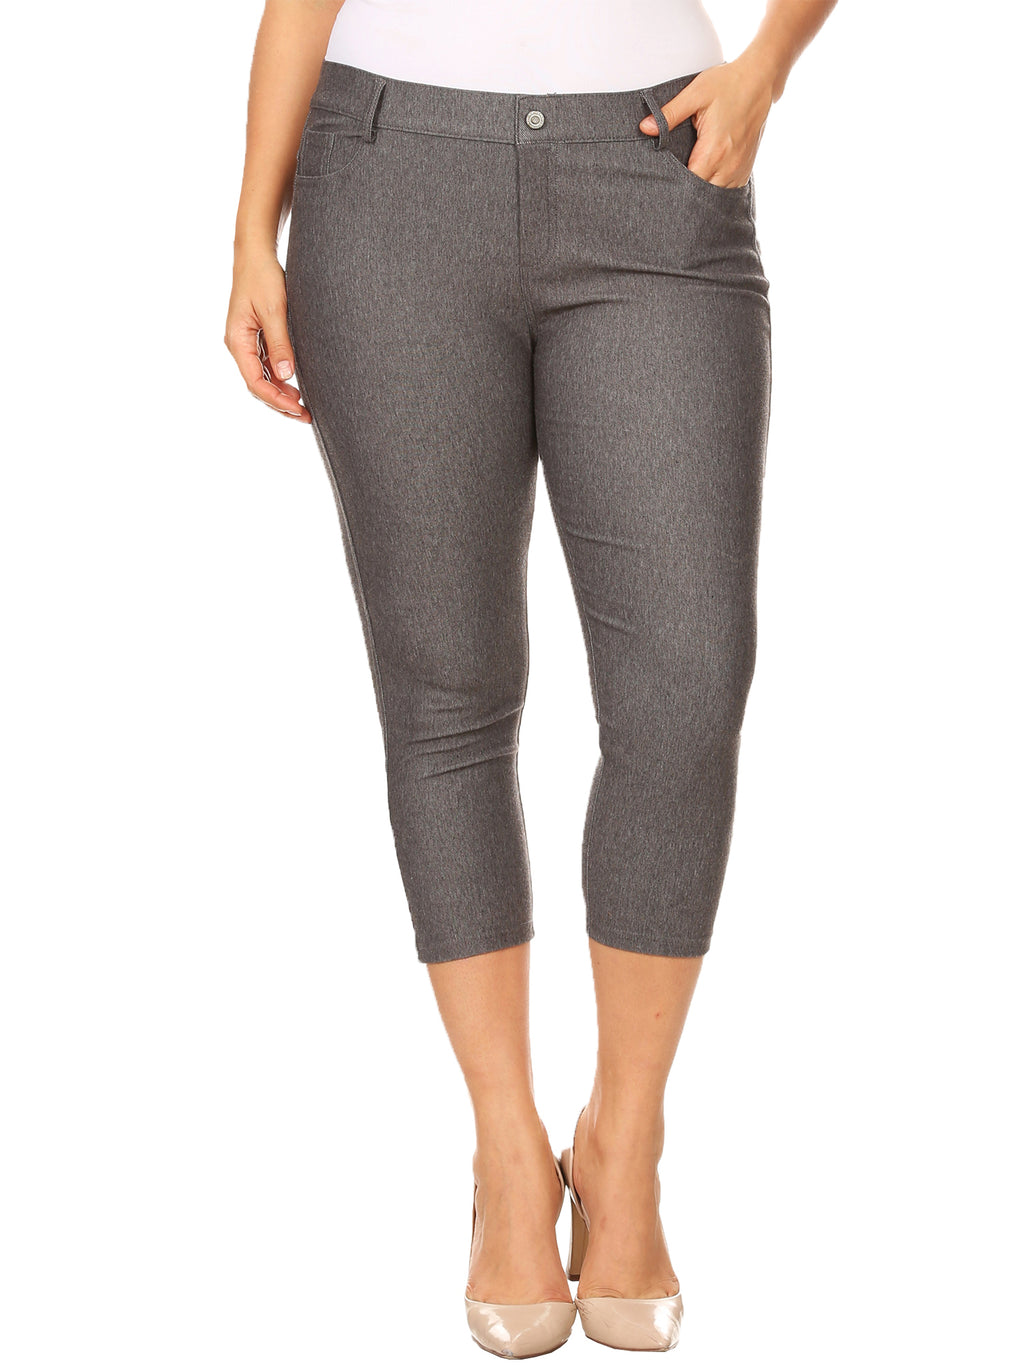 Plus Size Womens Gray 5 Pocket Jean Style Capri